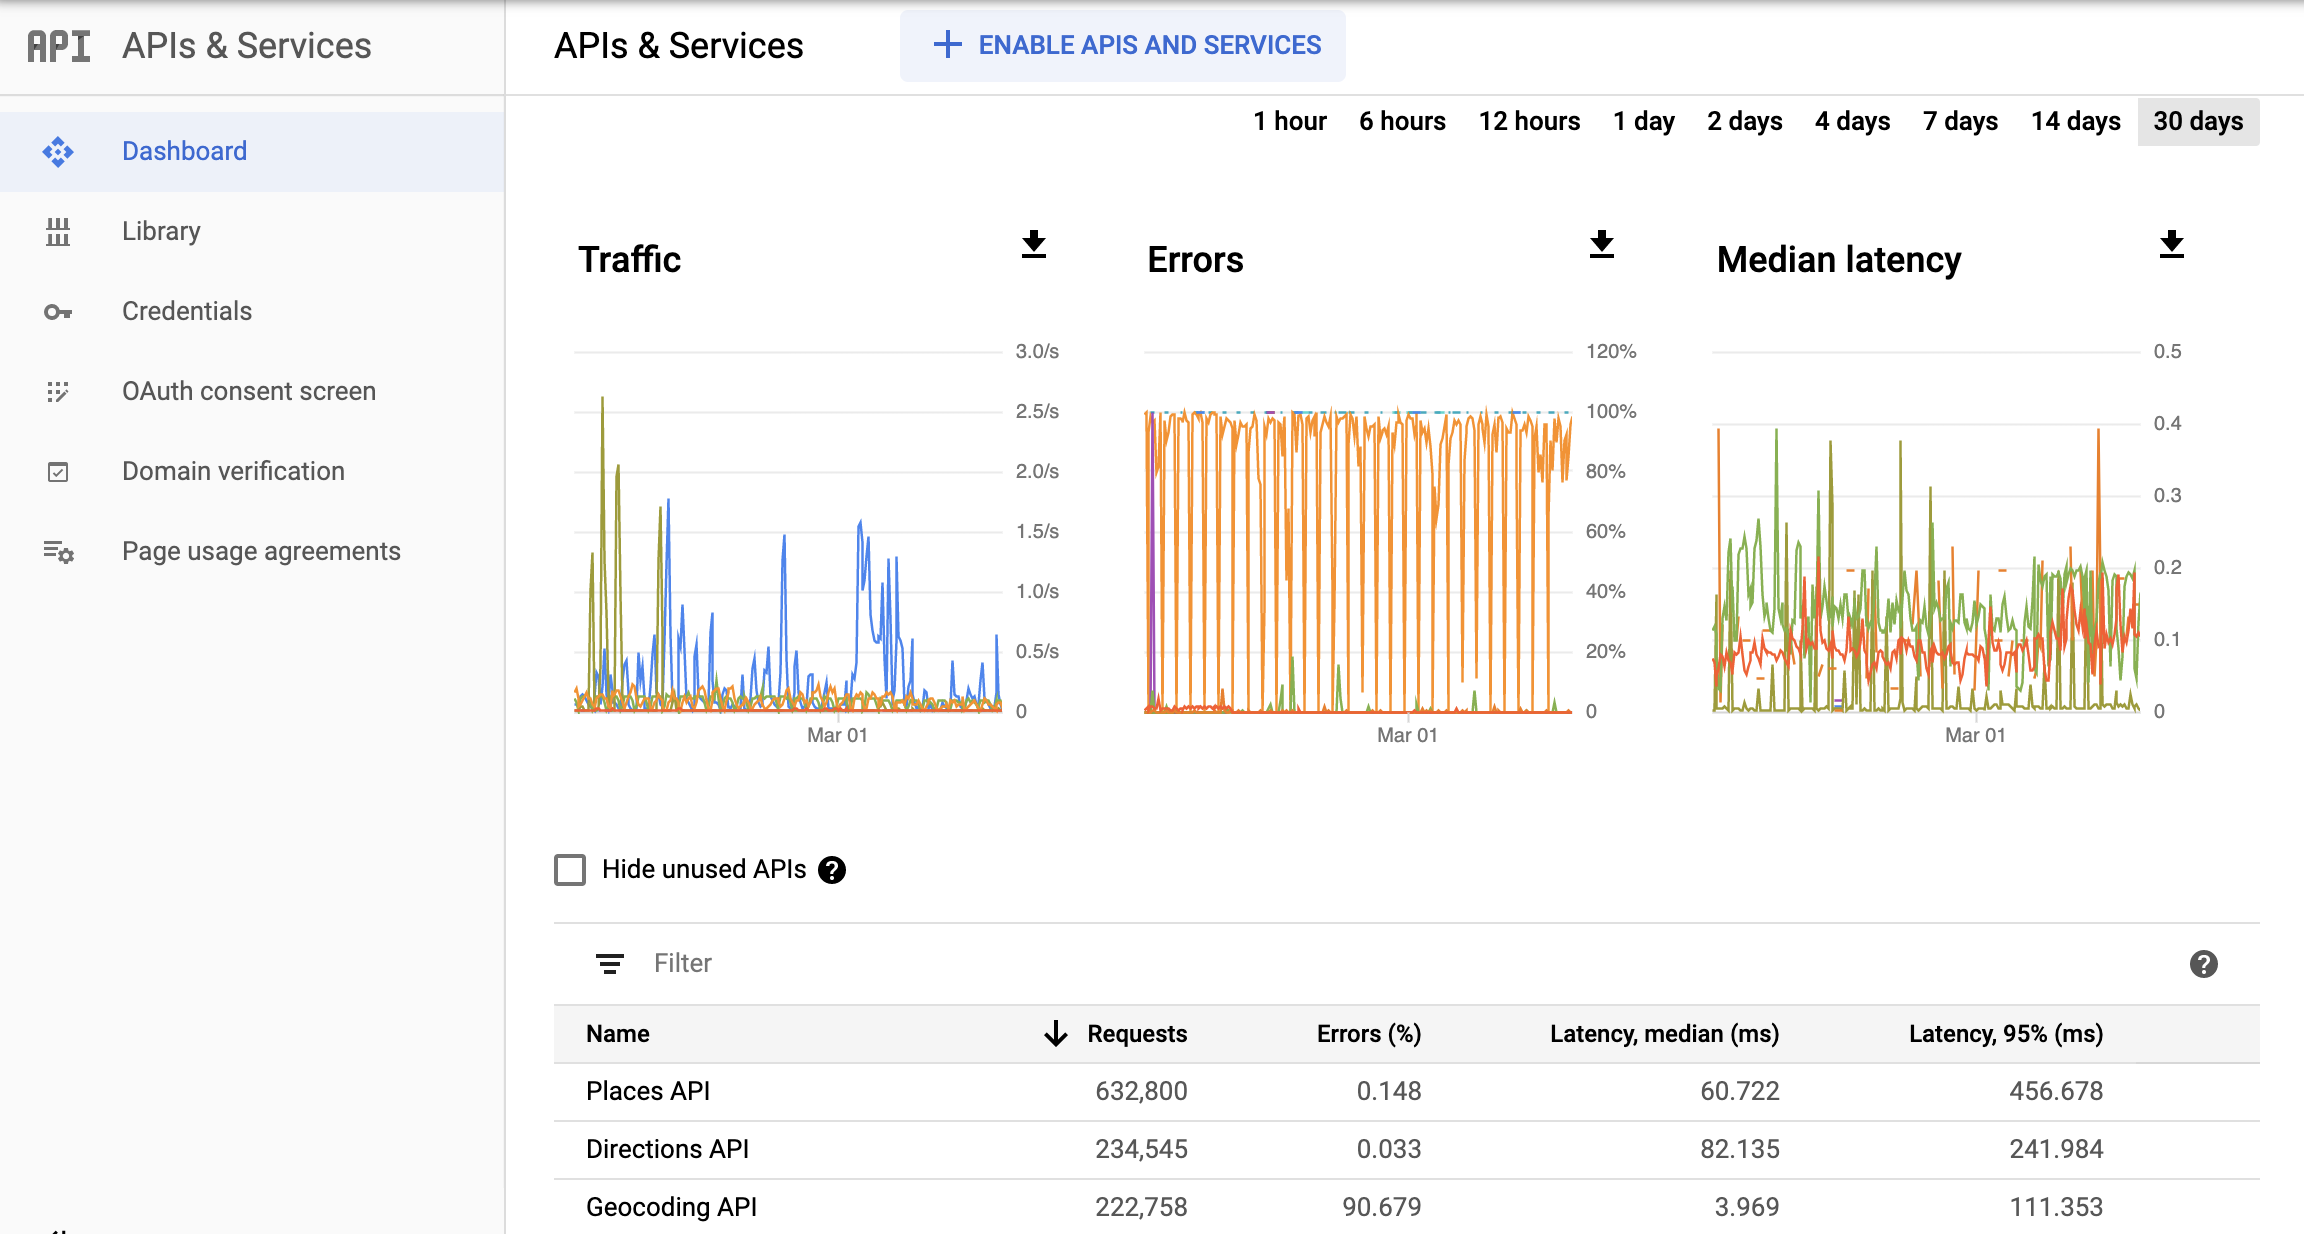 Screenshot halaman Monitoring APIs di Google Cloud Console, yang menampilkan dasbor laporan APIs & Services. Laporan ini menampilkan diagram terpisah untuk Traffic, Error, dan Median Latency. Diagram ini
  dapat menampilkan data dari rentang waktu satu jam hingga 30 hari.